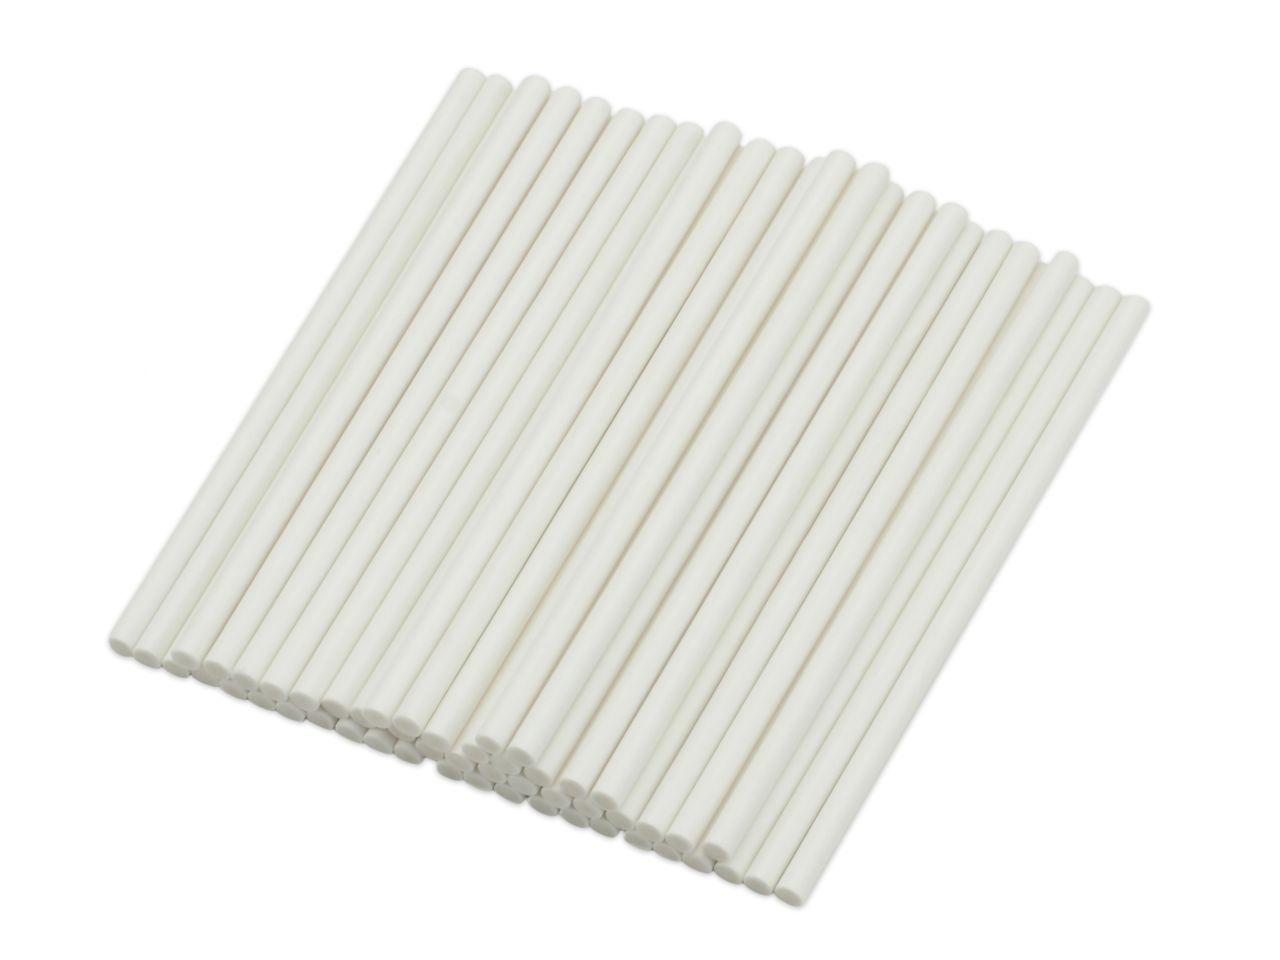 Λευκά χάρτινα sticks 20 τεμάχια 15 εκ.